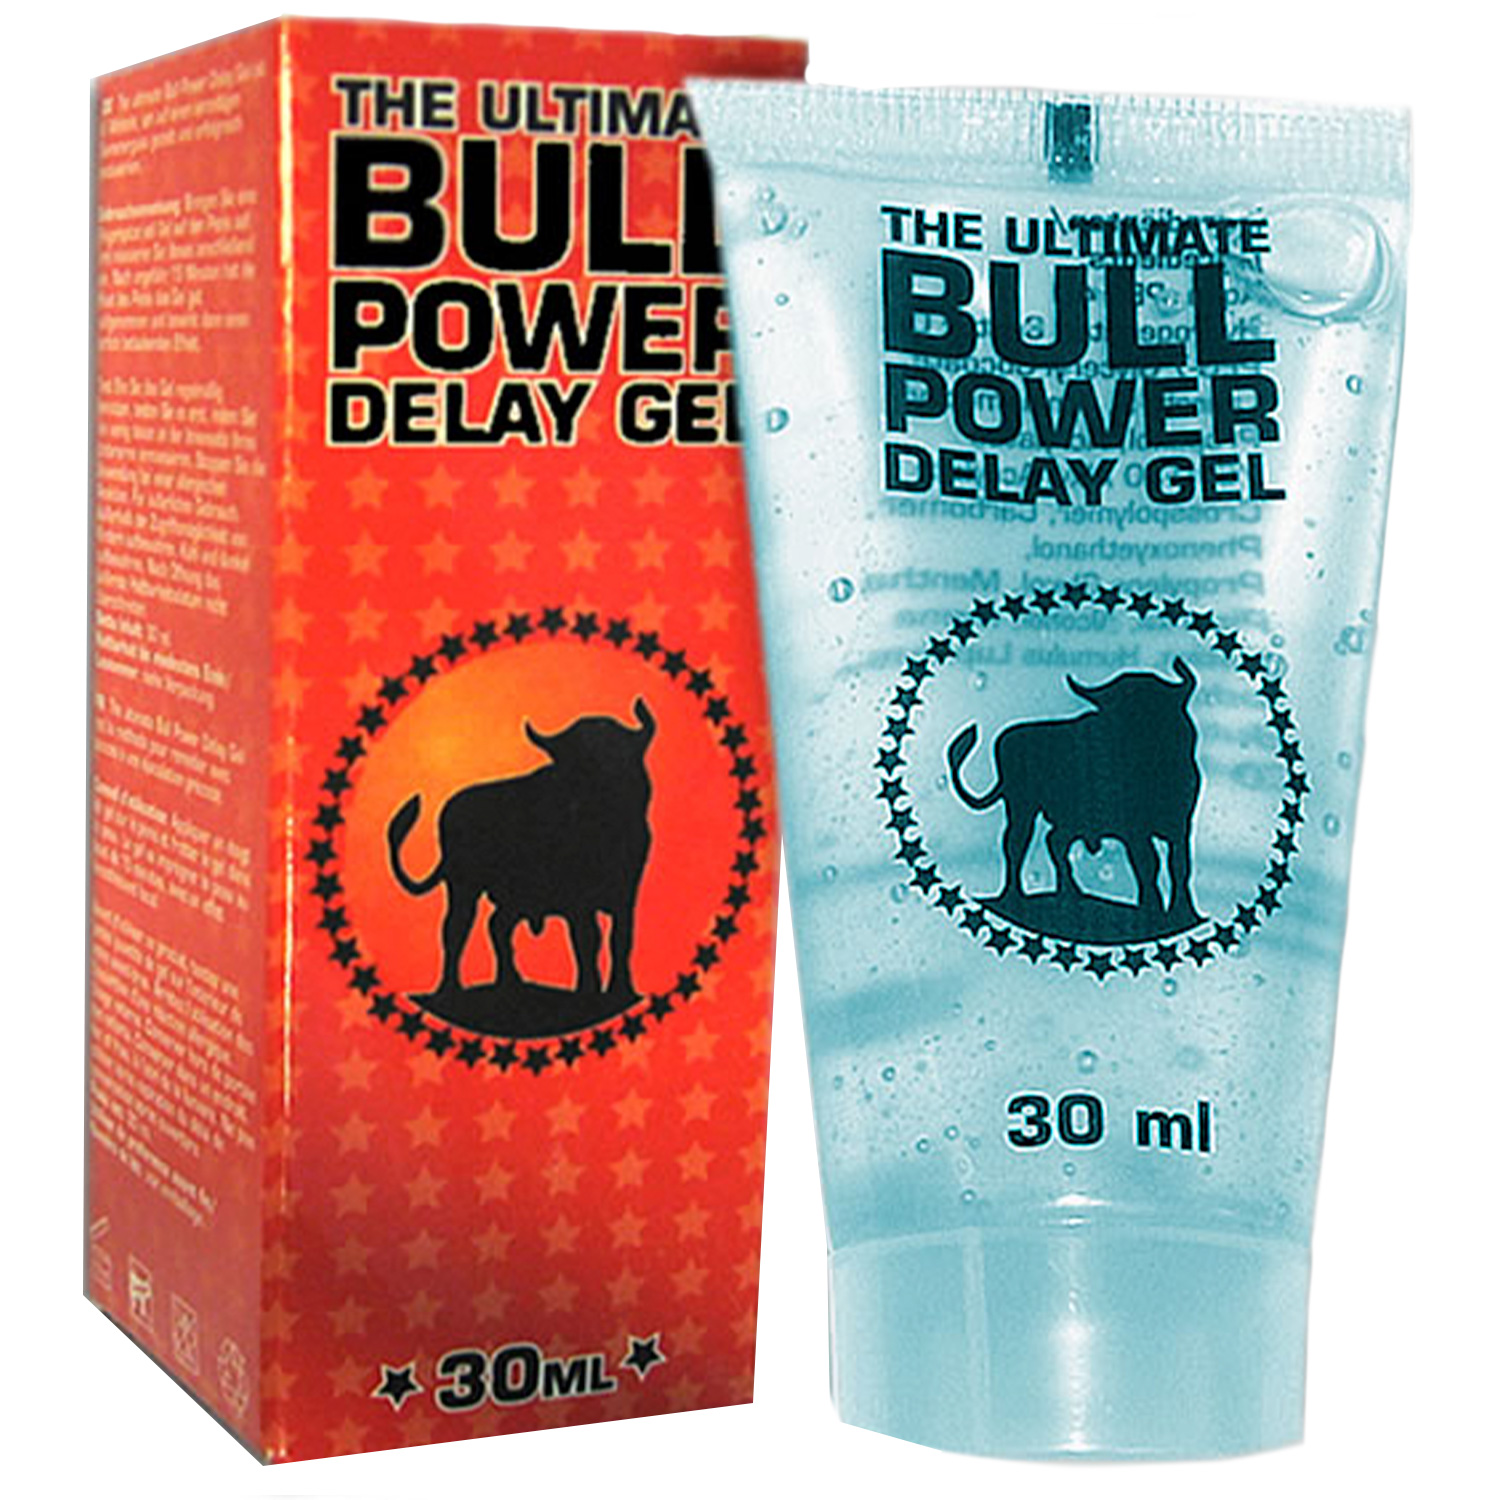 Bull Power Delay Gel 30 ml - Klar | Män//Favoriter//Par//REA för Män//REA för Par//REA//Bättre Sex//Förspel//Bättre Orgasmer//Delay Spray//Bättre Erektion//Bull Power//Glidmedel för män//Glidmedel för par | Intimast